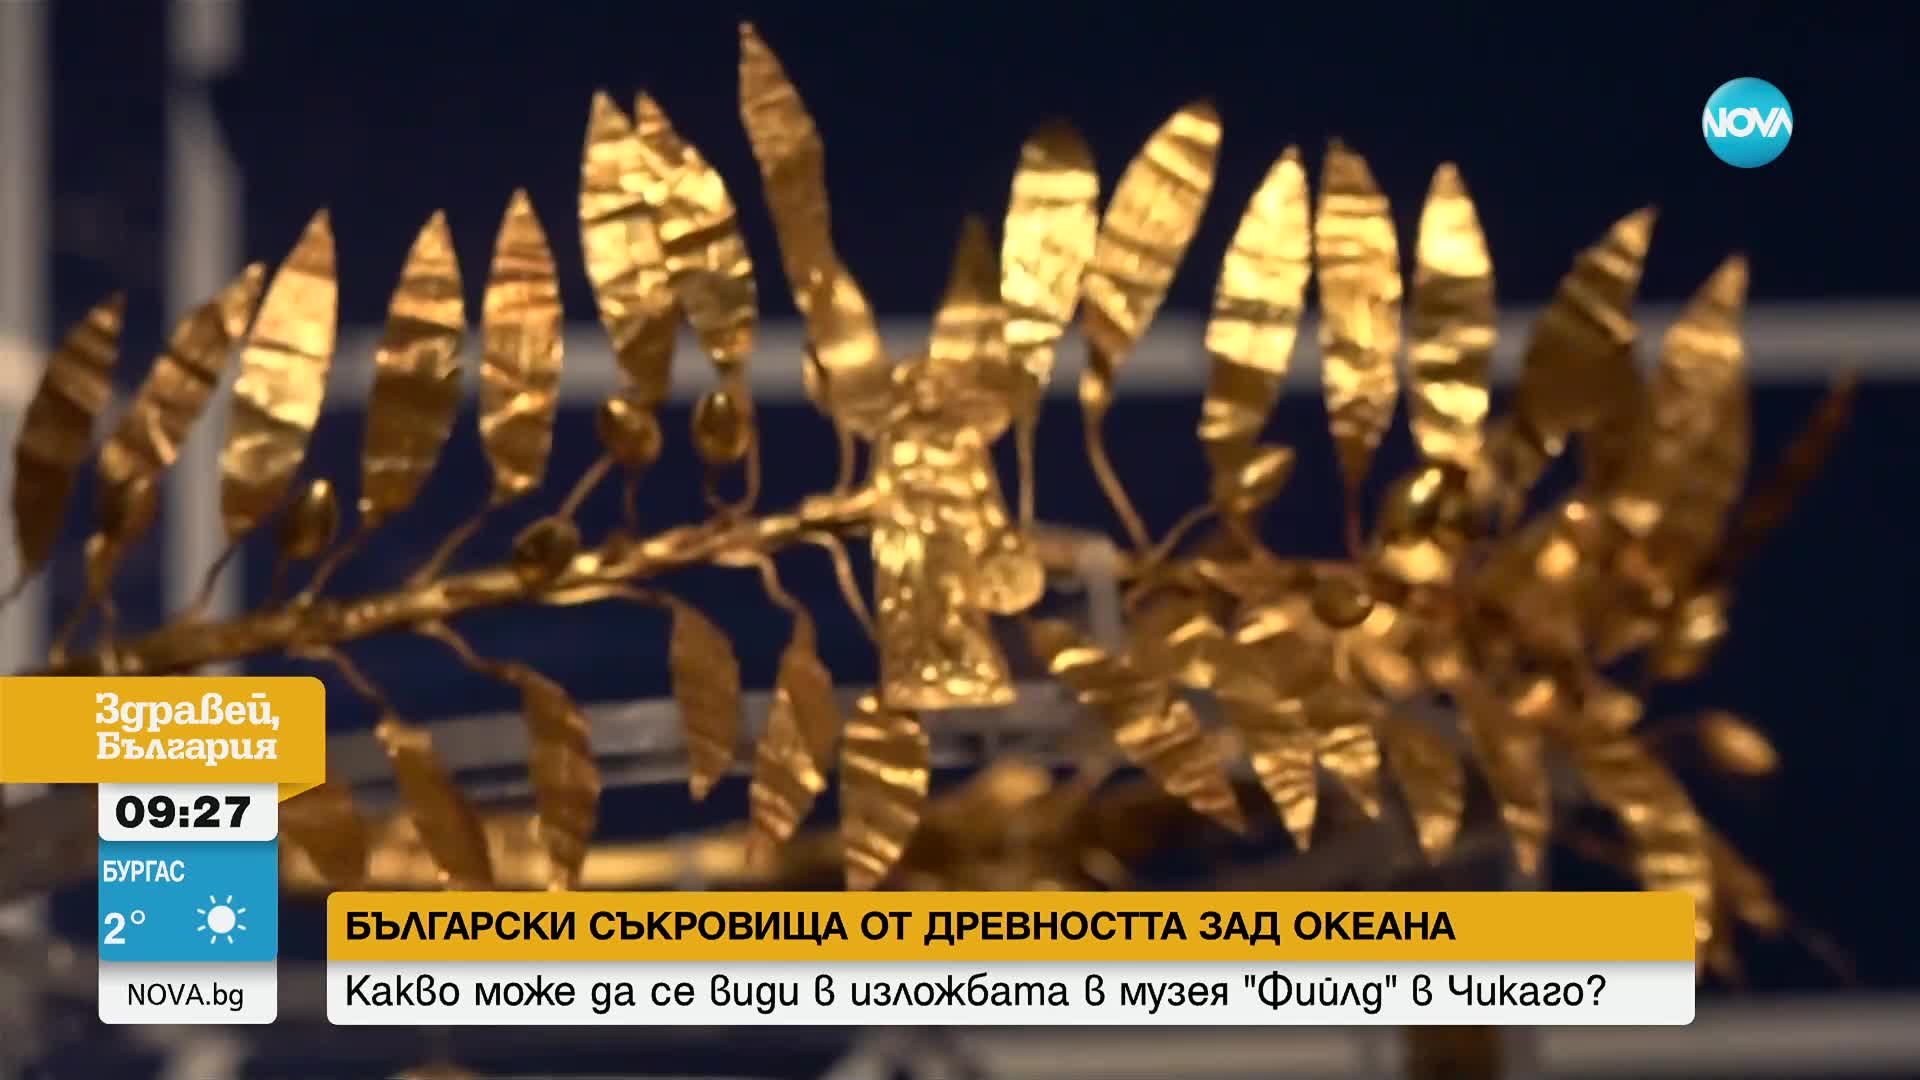 Български съкровища от древността зад океана: Изложба в Чикаго обединява предмети от 11 държави